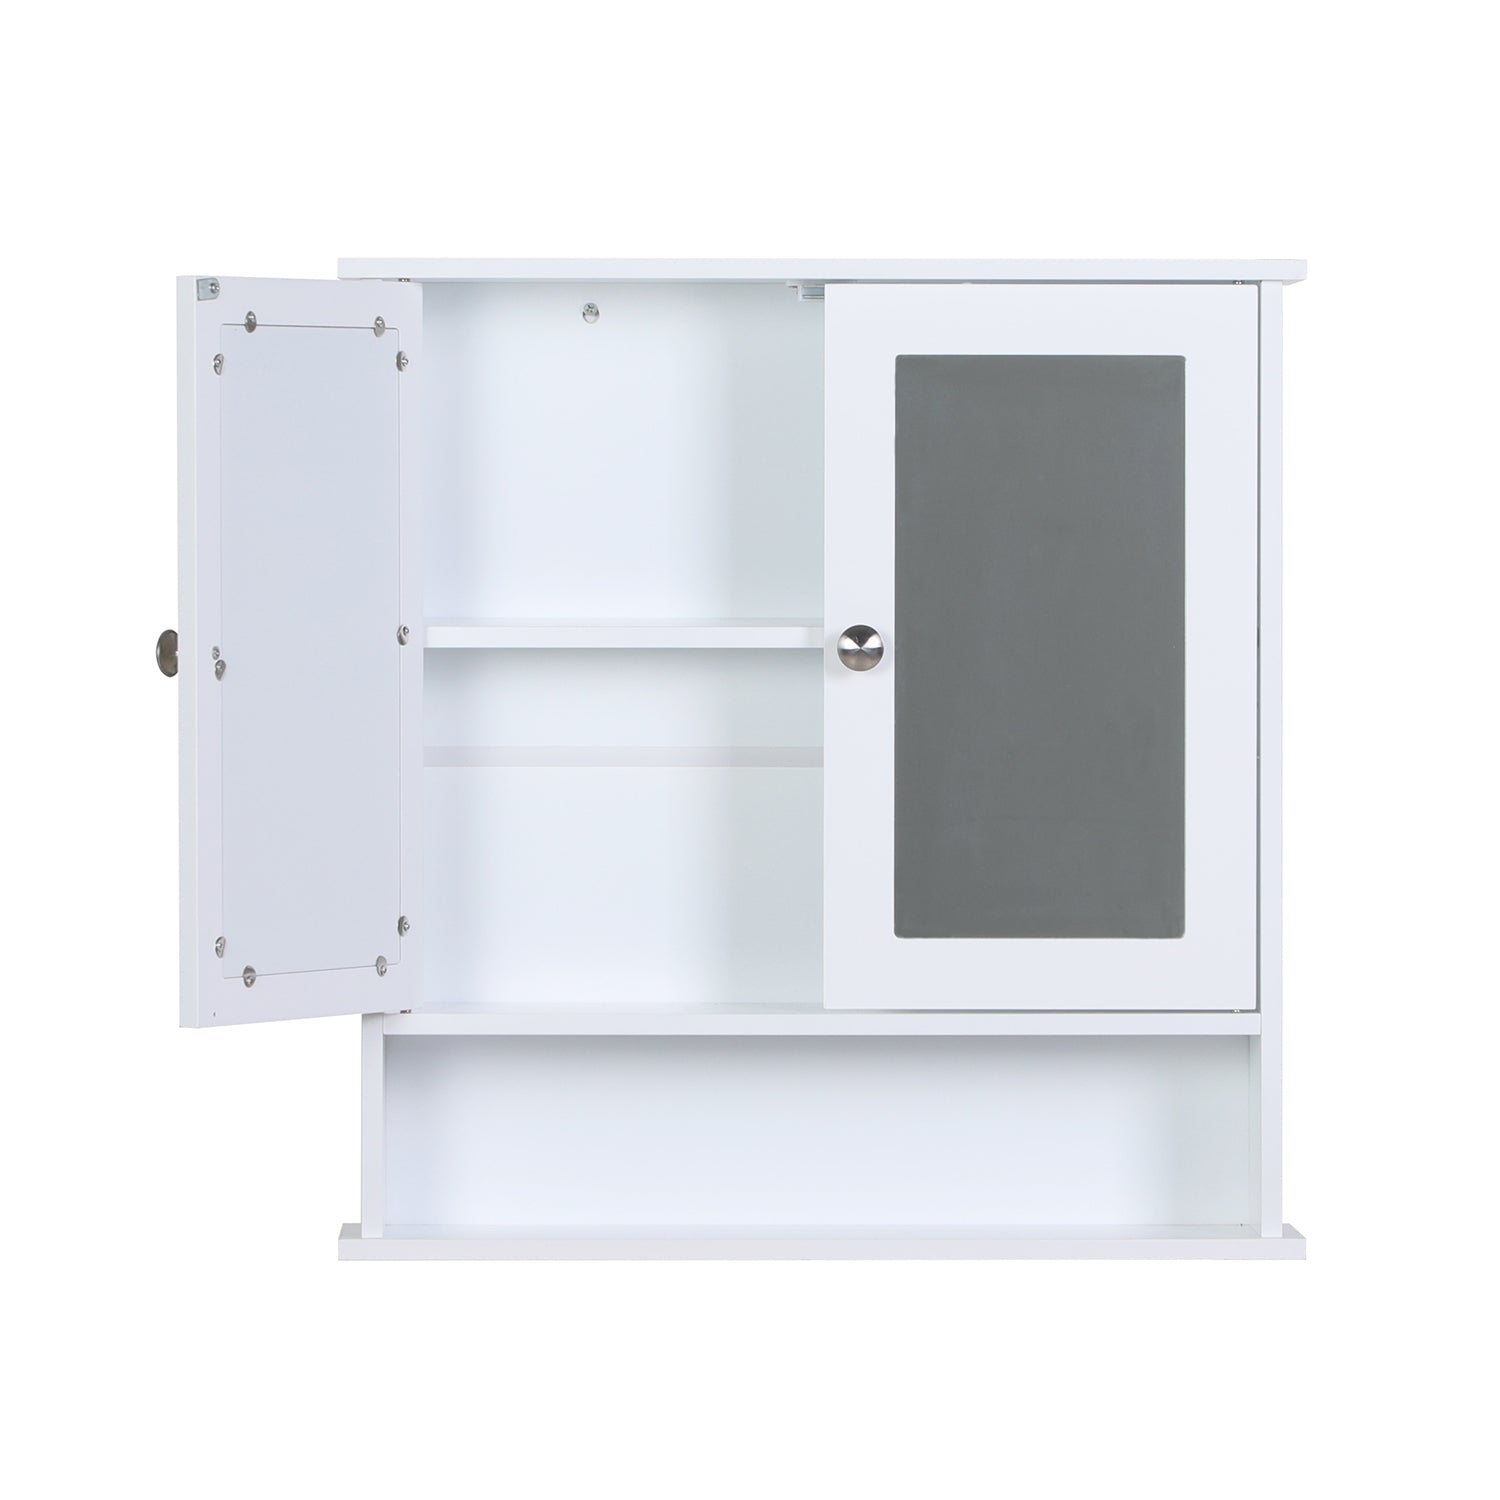 PHI VILLA 3-Color Medicine Cabinet Bathroom Cabinet Wall Mounted with Double Mirror Doors